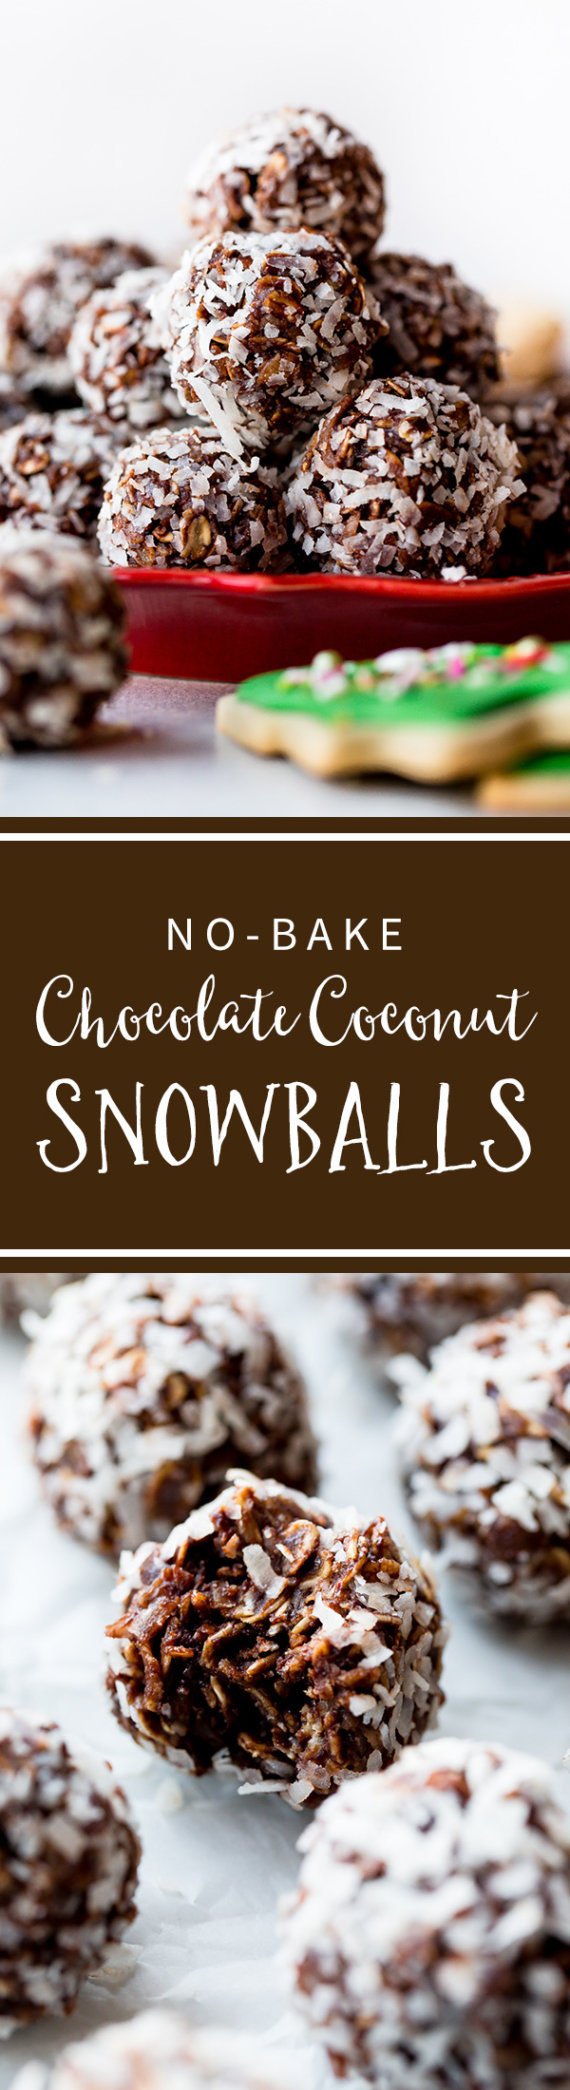 Ces biscuits boule de neige au chocolat et à la noix de coco sans cuisson sont SI faciles à faire! Plein d'avoine et de cacao et roulé dans de la noix de coco pour ressembler à des boules de neige! Recette sur sallysbakingaddiction.com